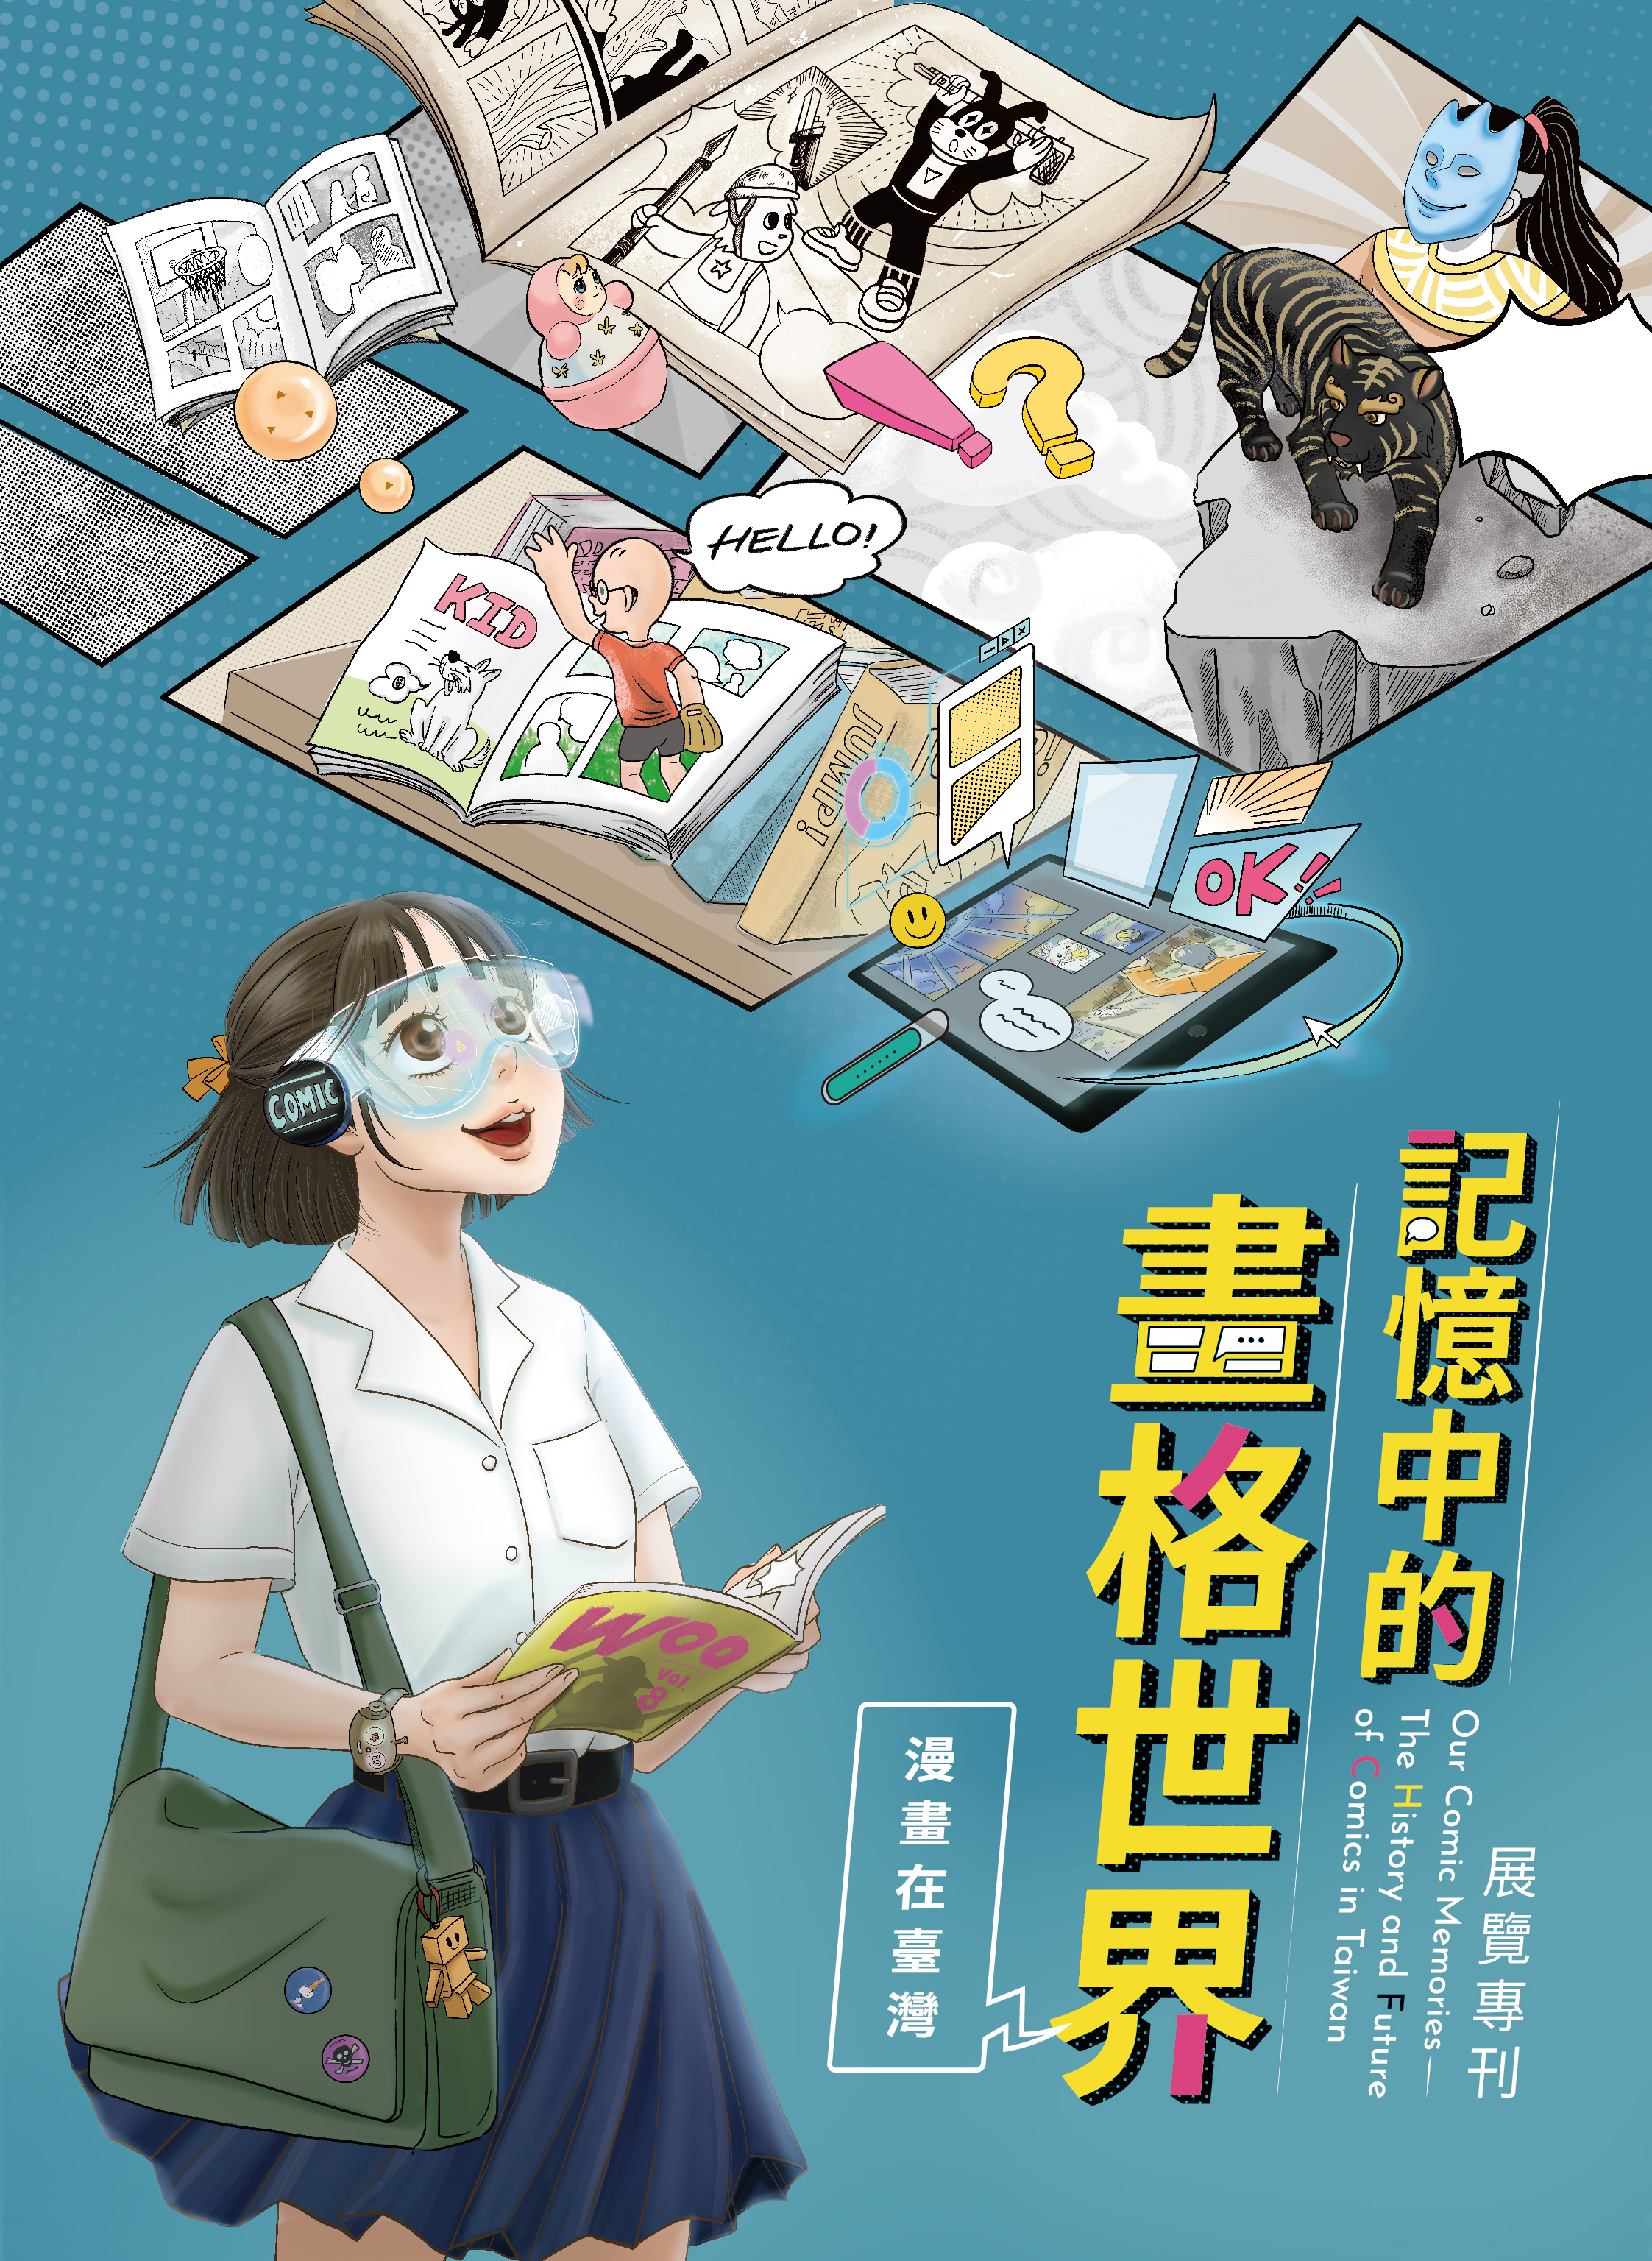 記憶中的畫格世界 : 漫畫在臺灣展覽專刊